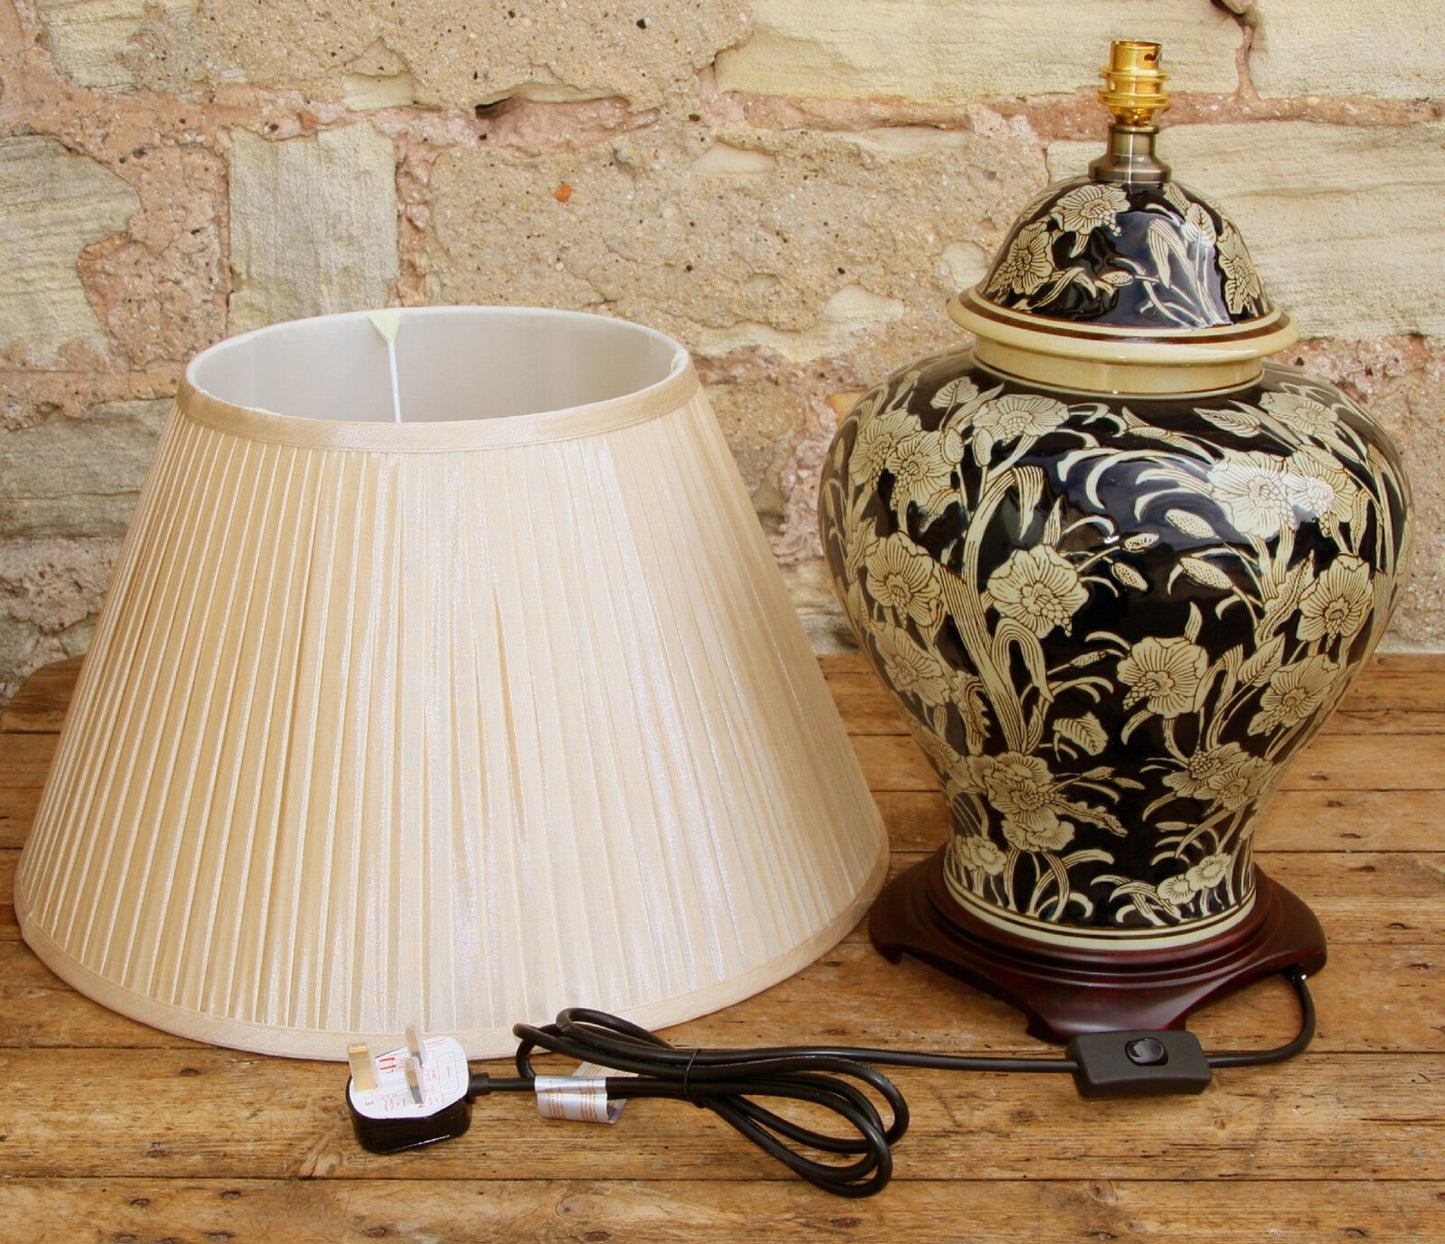 Ceramic Embossed Lamp, Regal Design 67cm